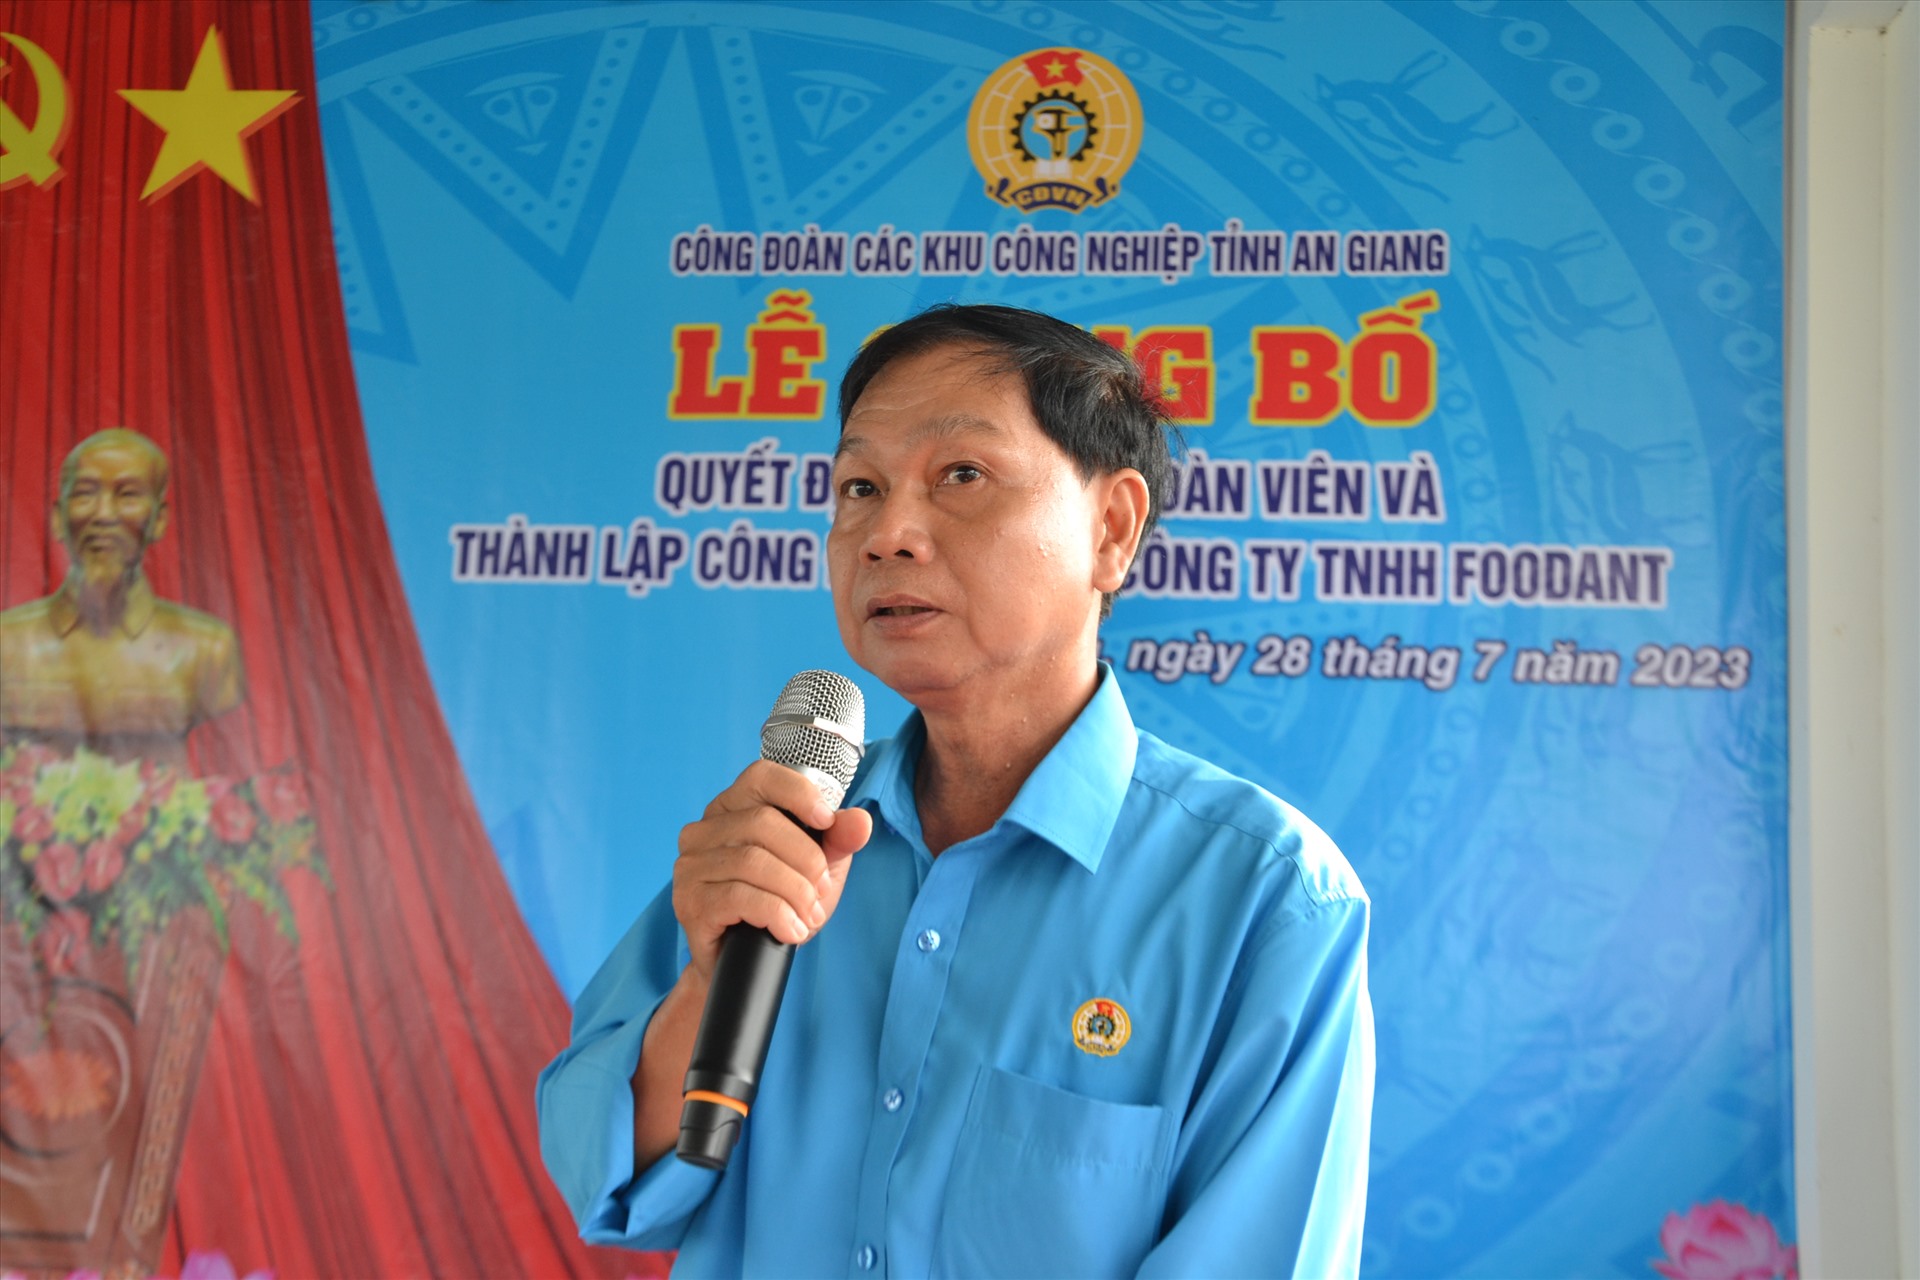 Chủ tịch Công đoàn các khu công nghiệp tỉnh An Giang Trần Lưu Phong phát biểu tại buổi lễ. Ảnh: Lâm Điền